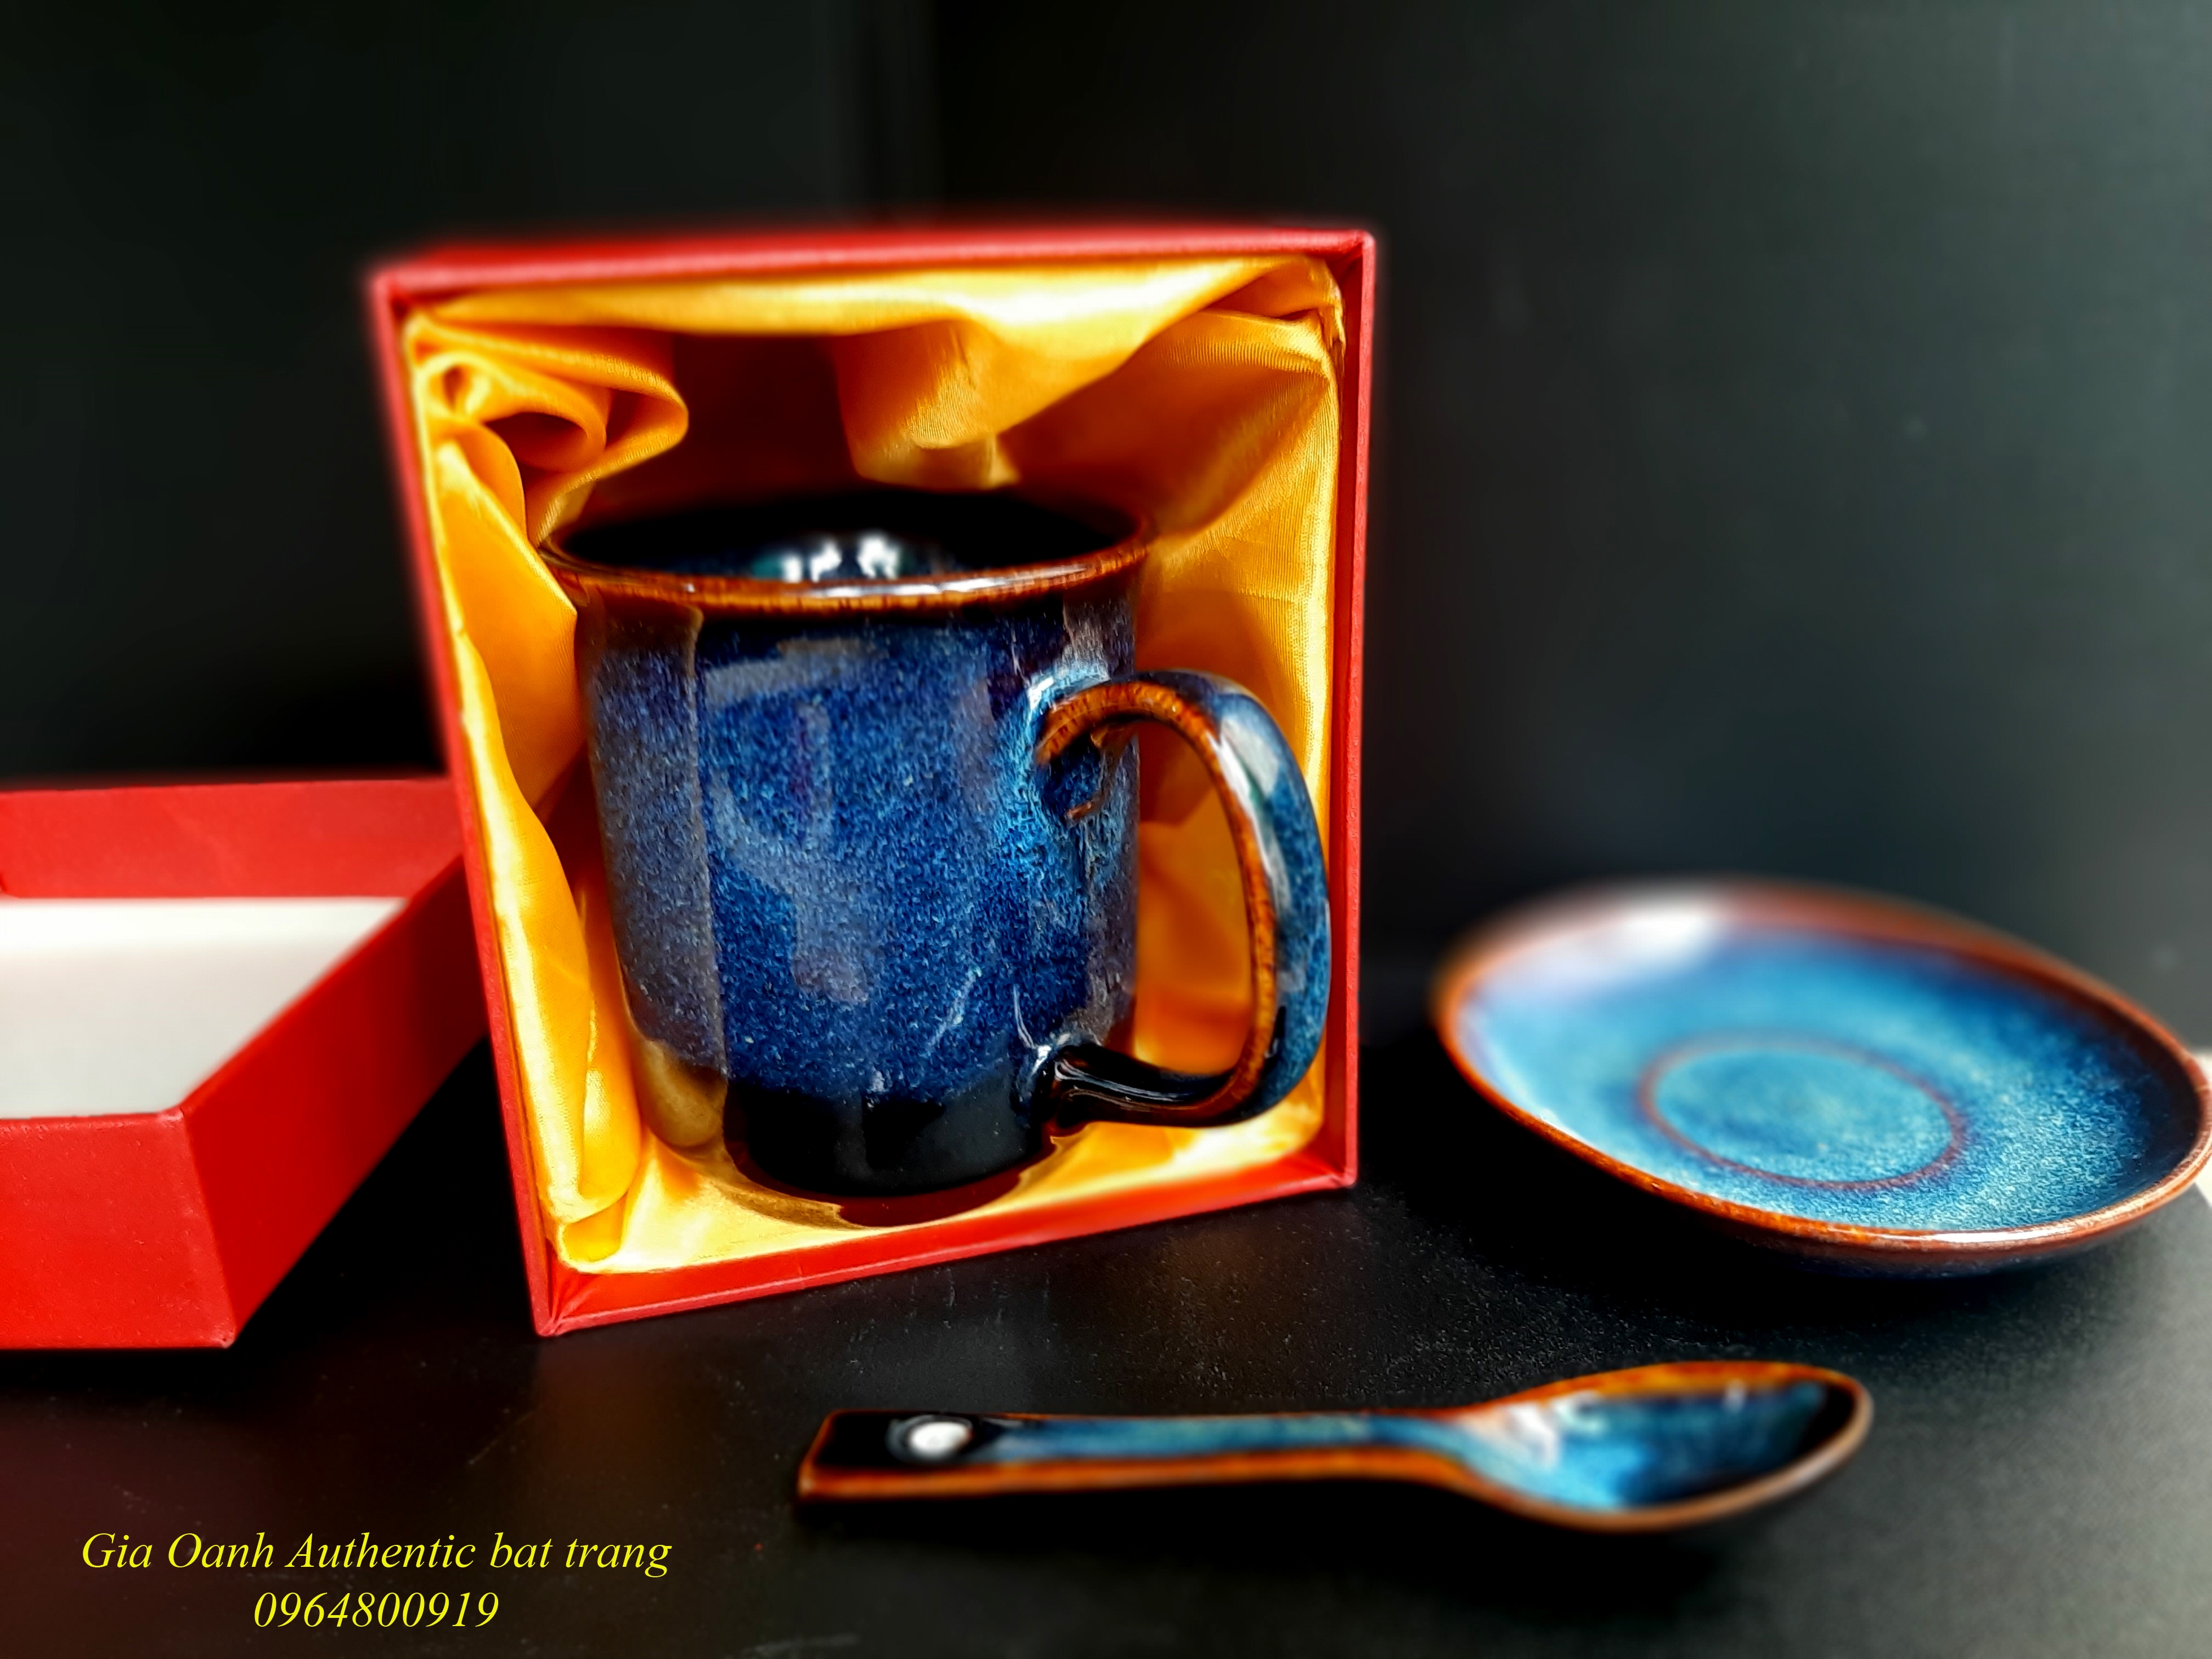 Cup set gift collection / Bộ quà tặng cốc sứ men xanh hỏa biến sản xuất tại xưởng gốm sứ Gia Oanh Authentic bat trang